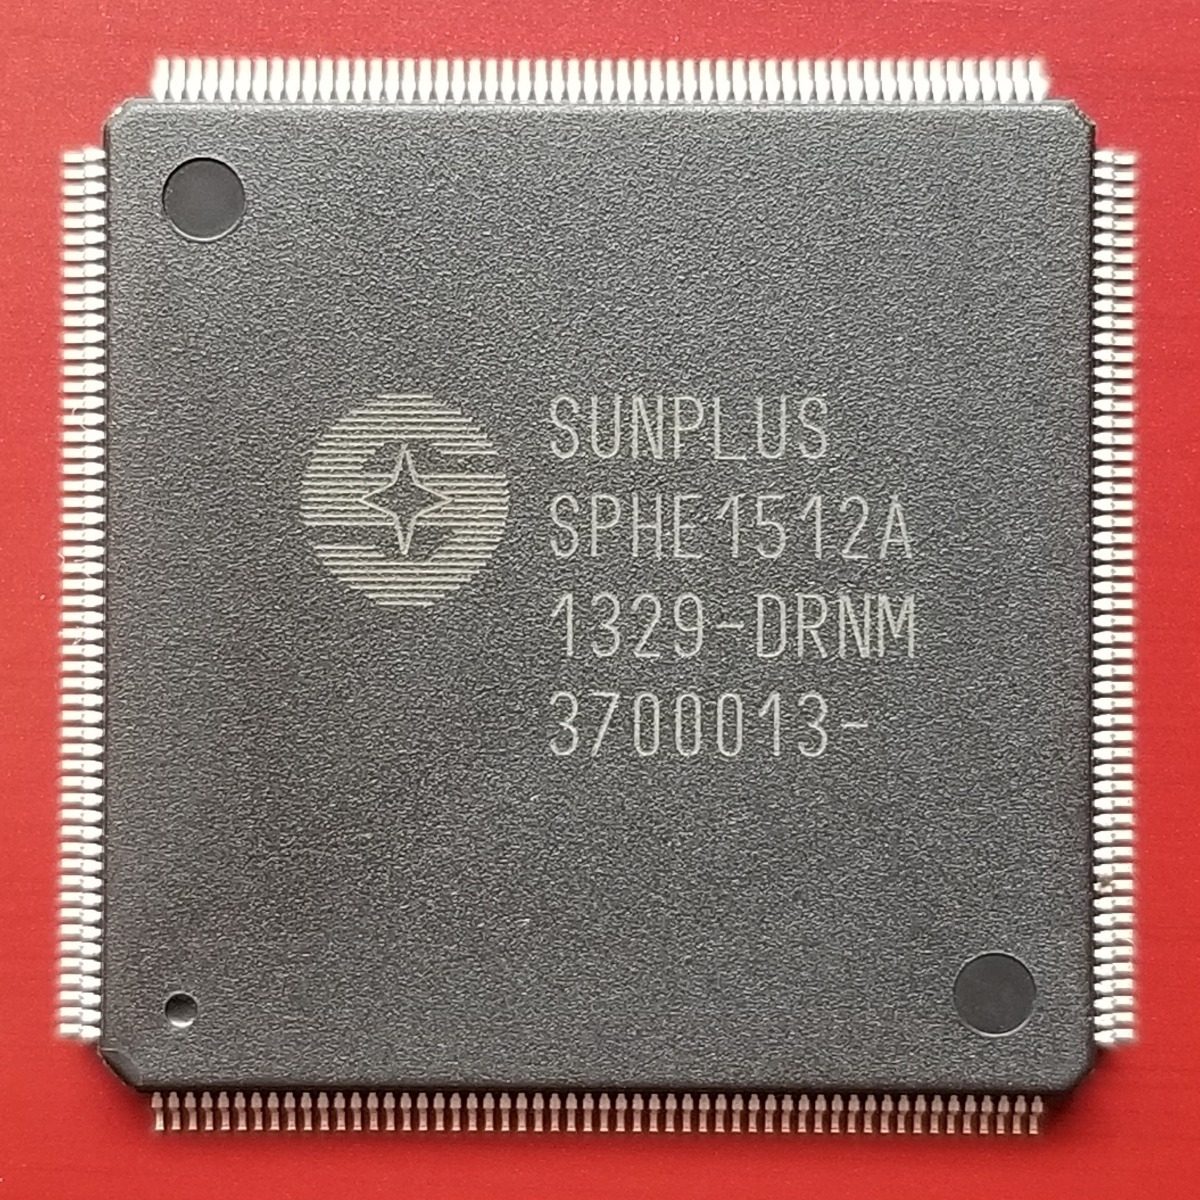 Ci Processador Sunplus Sphe1512a - R$ 85,00 em Mercado Livre